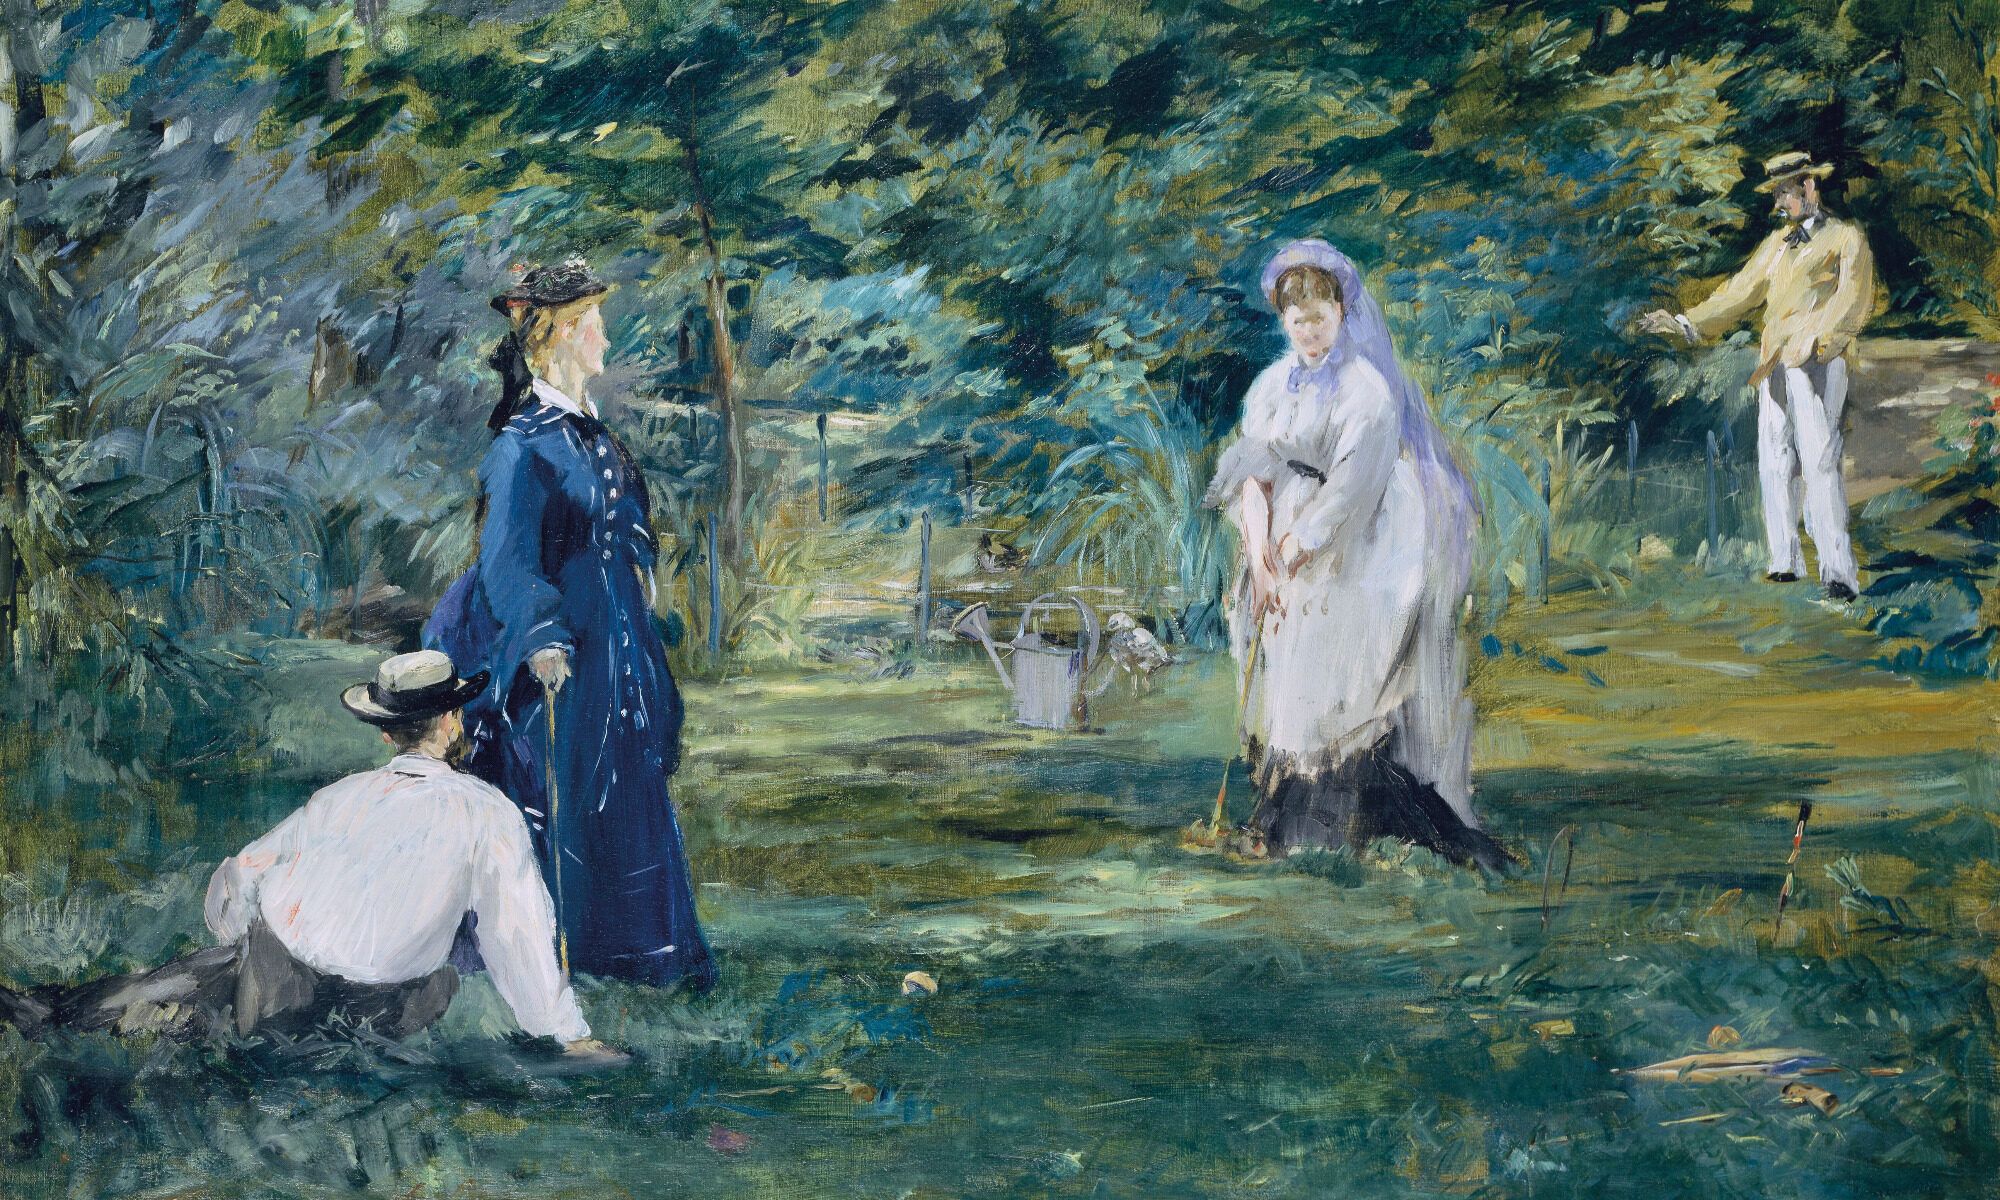 Gra w krokieta, Édouard Manet, 1873.